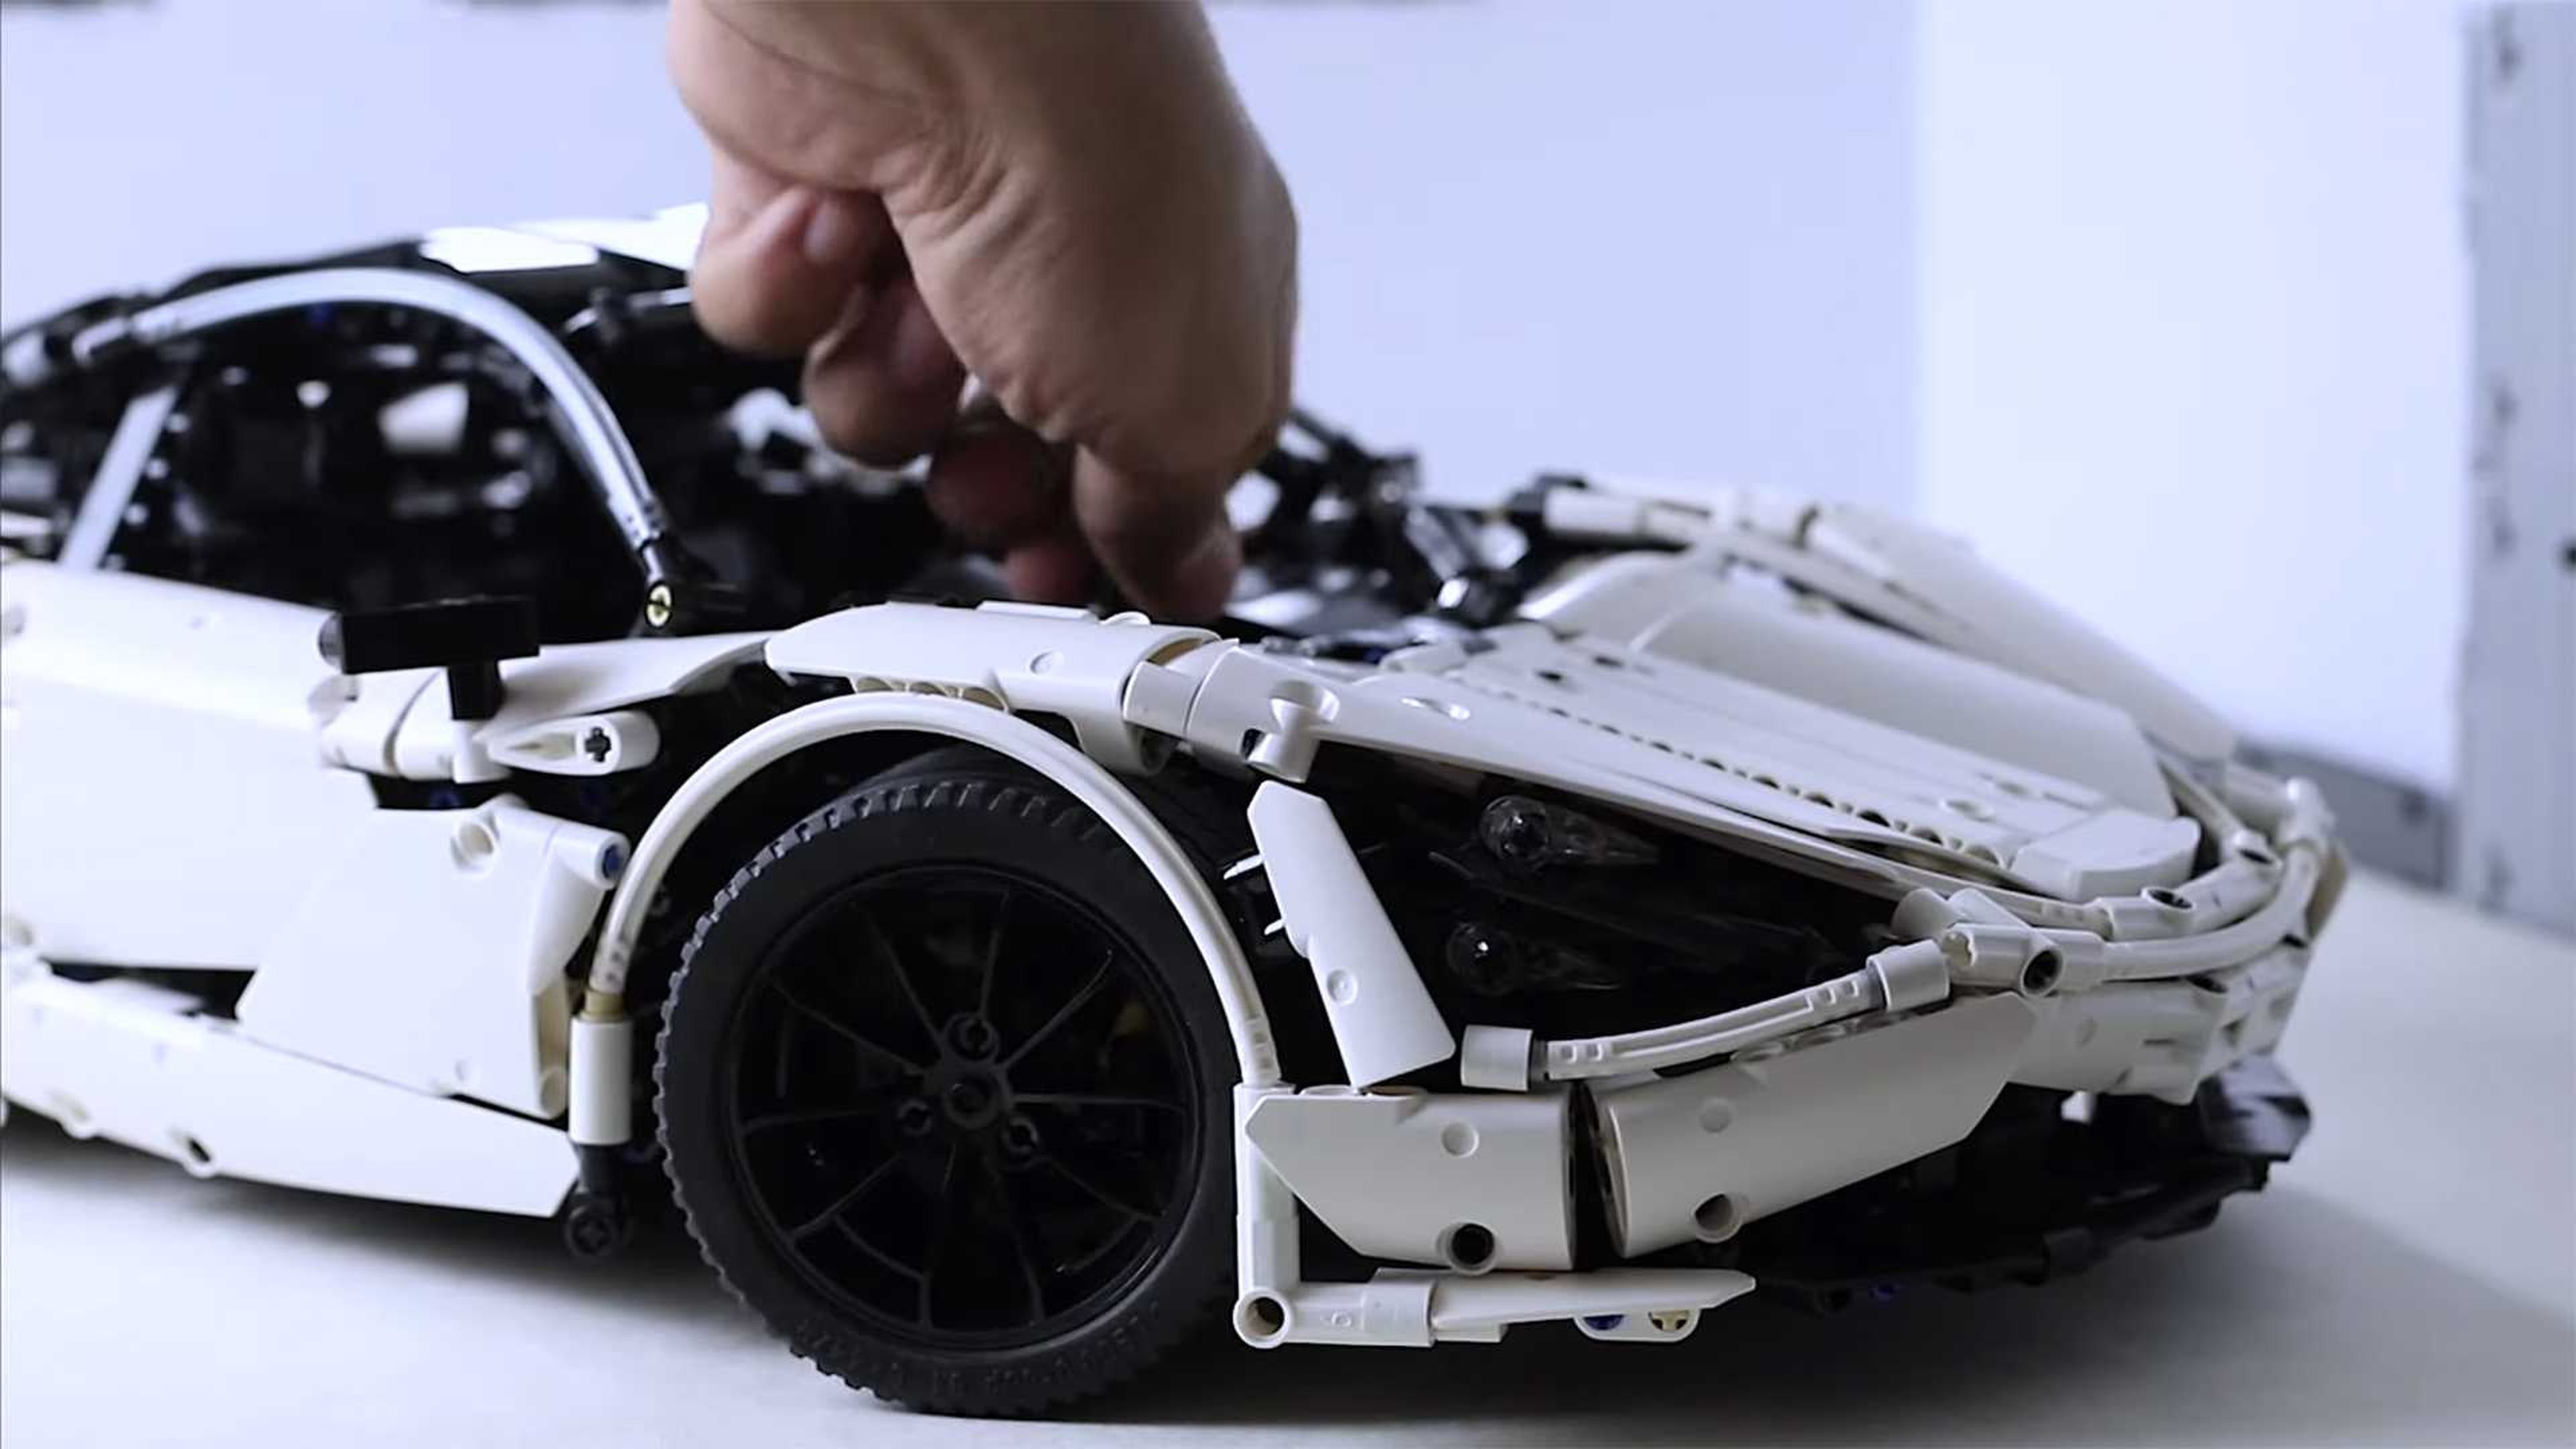 Construir este McLaren 720S personalizado de Lego llevó dos años